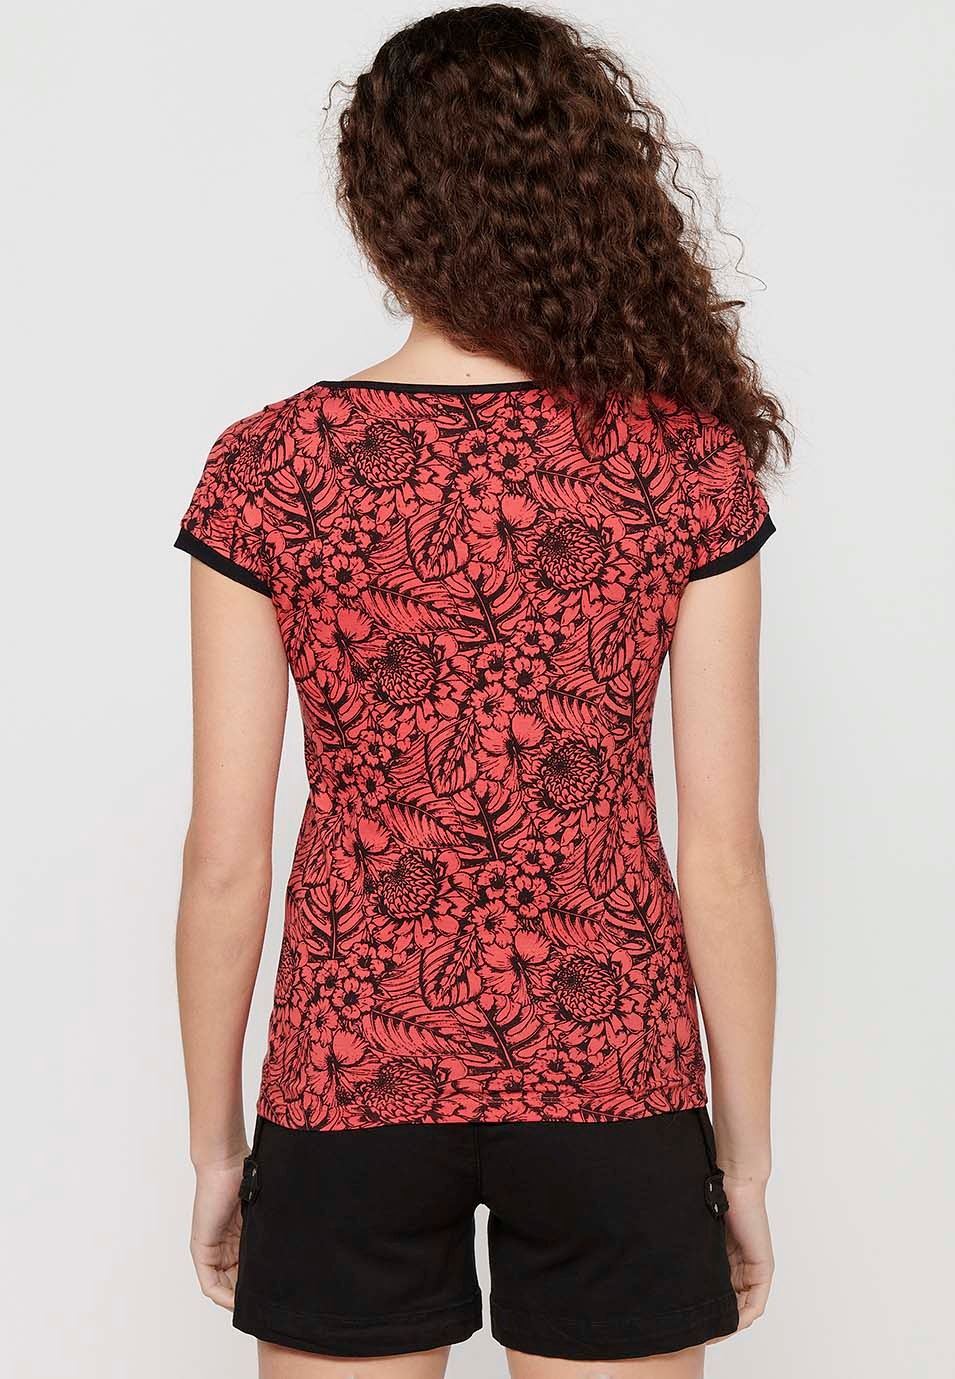 Camiseta de manga corta de Algodón con Cuello pico y Estampado floral con Detalles bordados de Color Coral para Mujer 7